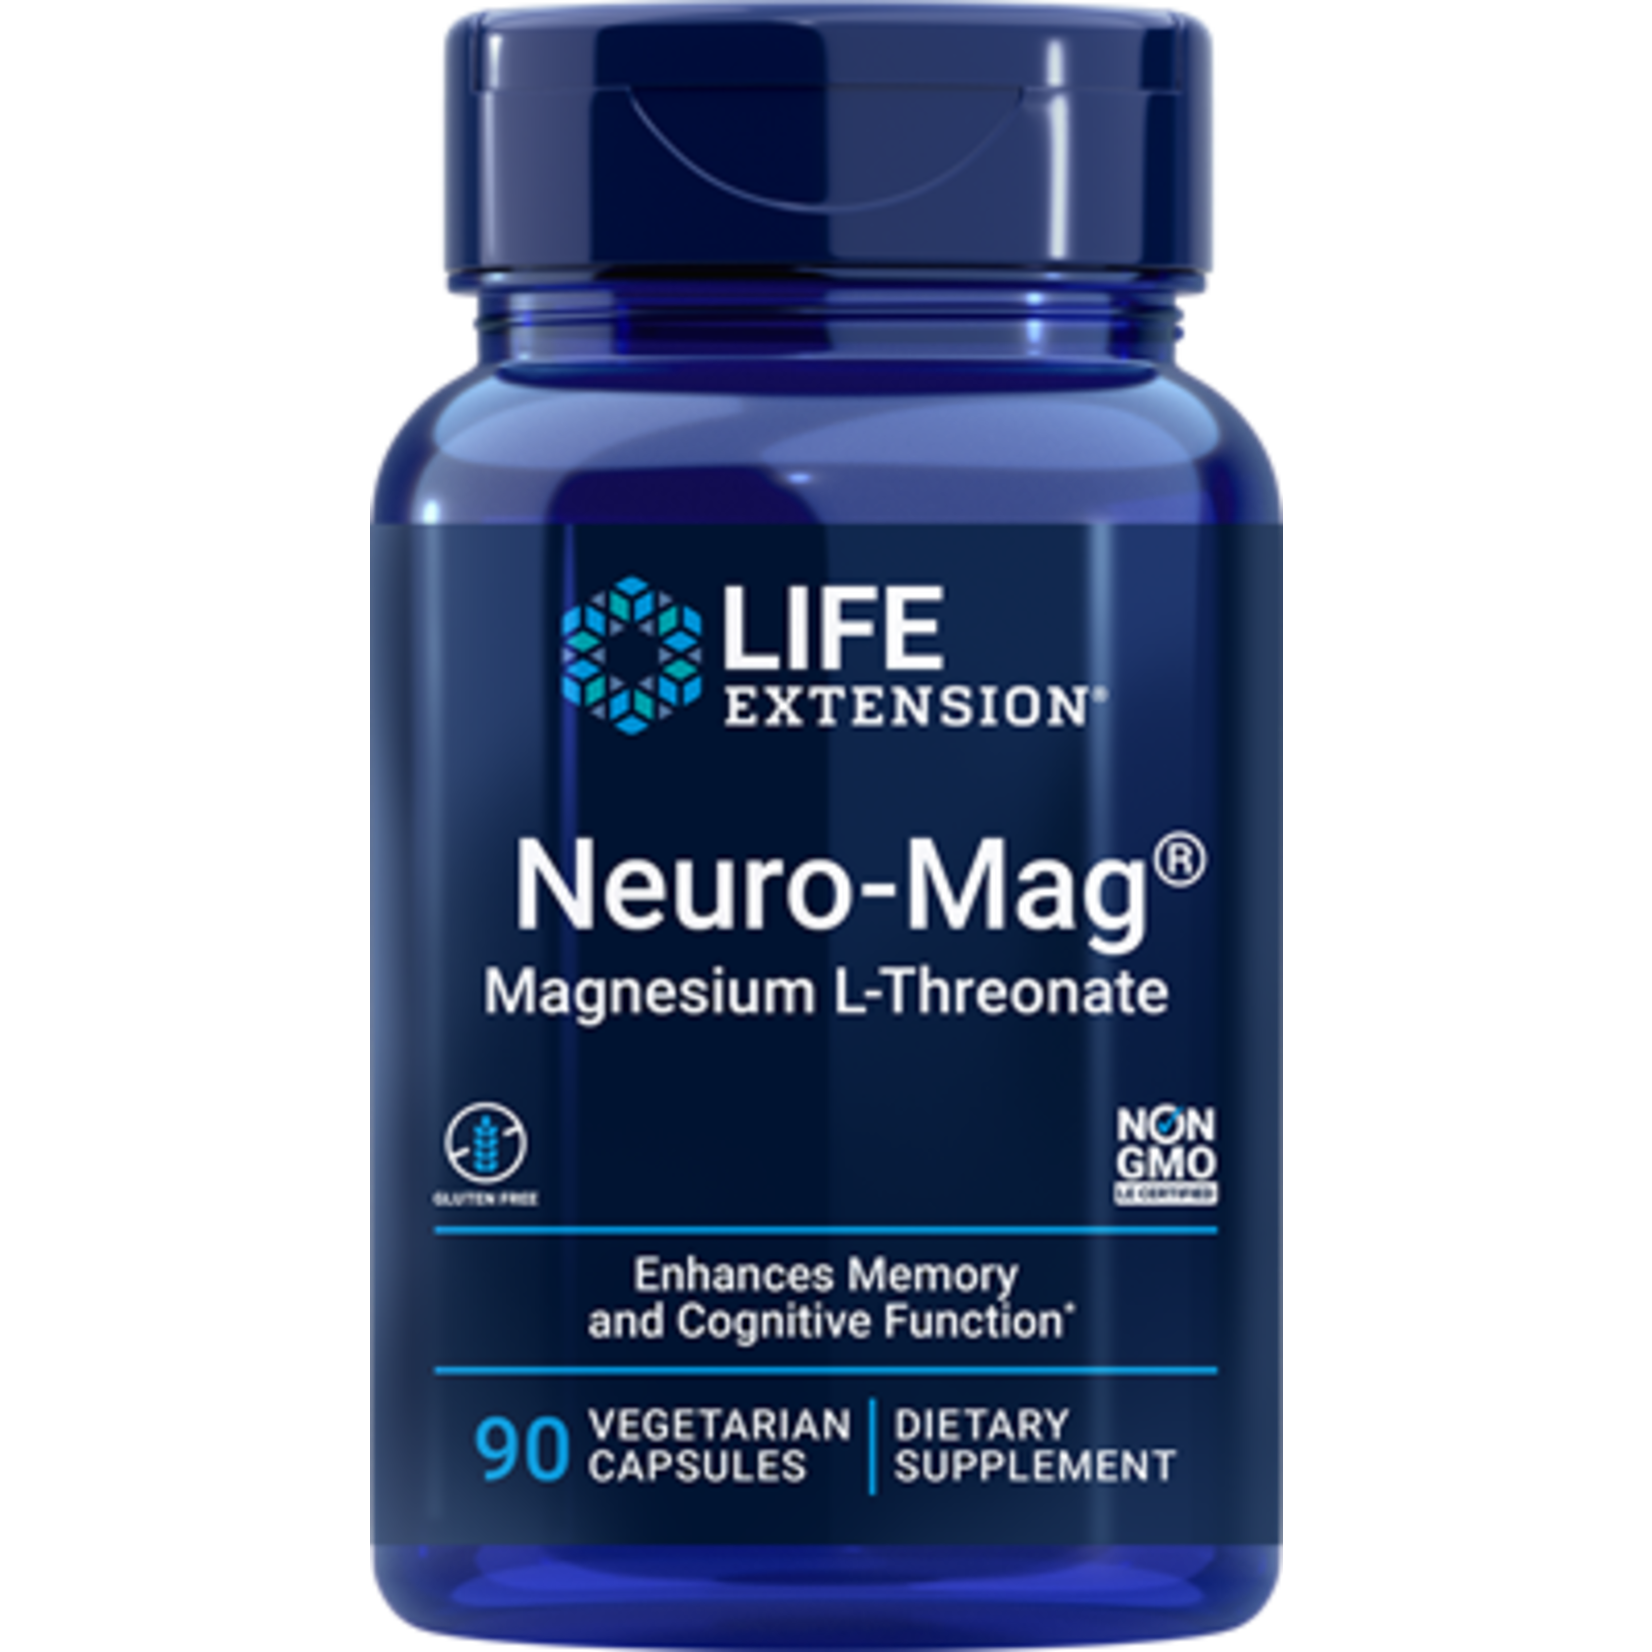 Life Extension Life Extension - Neuro-Mag® Magnesium L-Threonate - 90 Veg Capsules